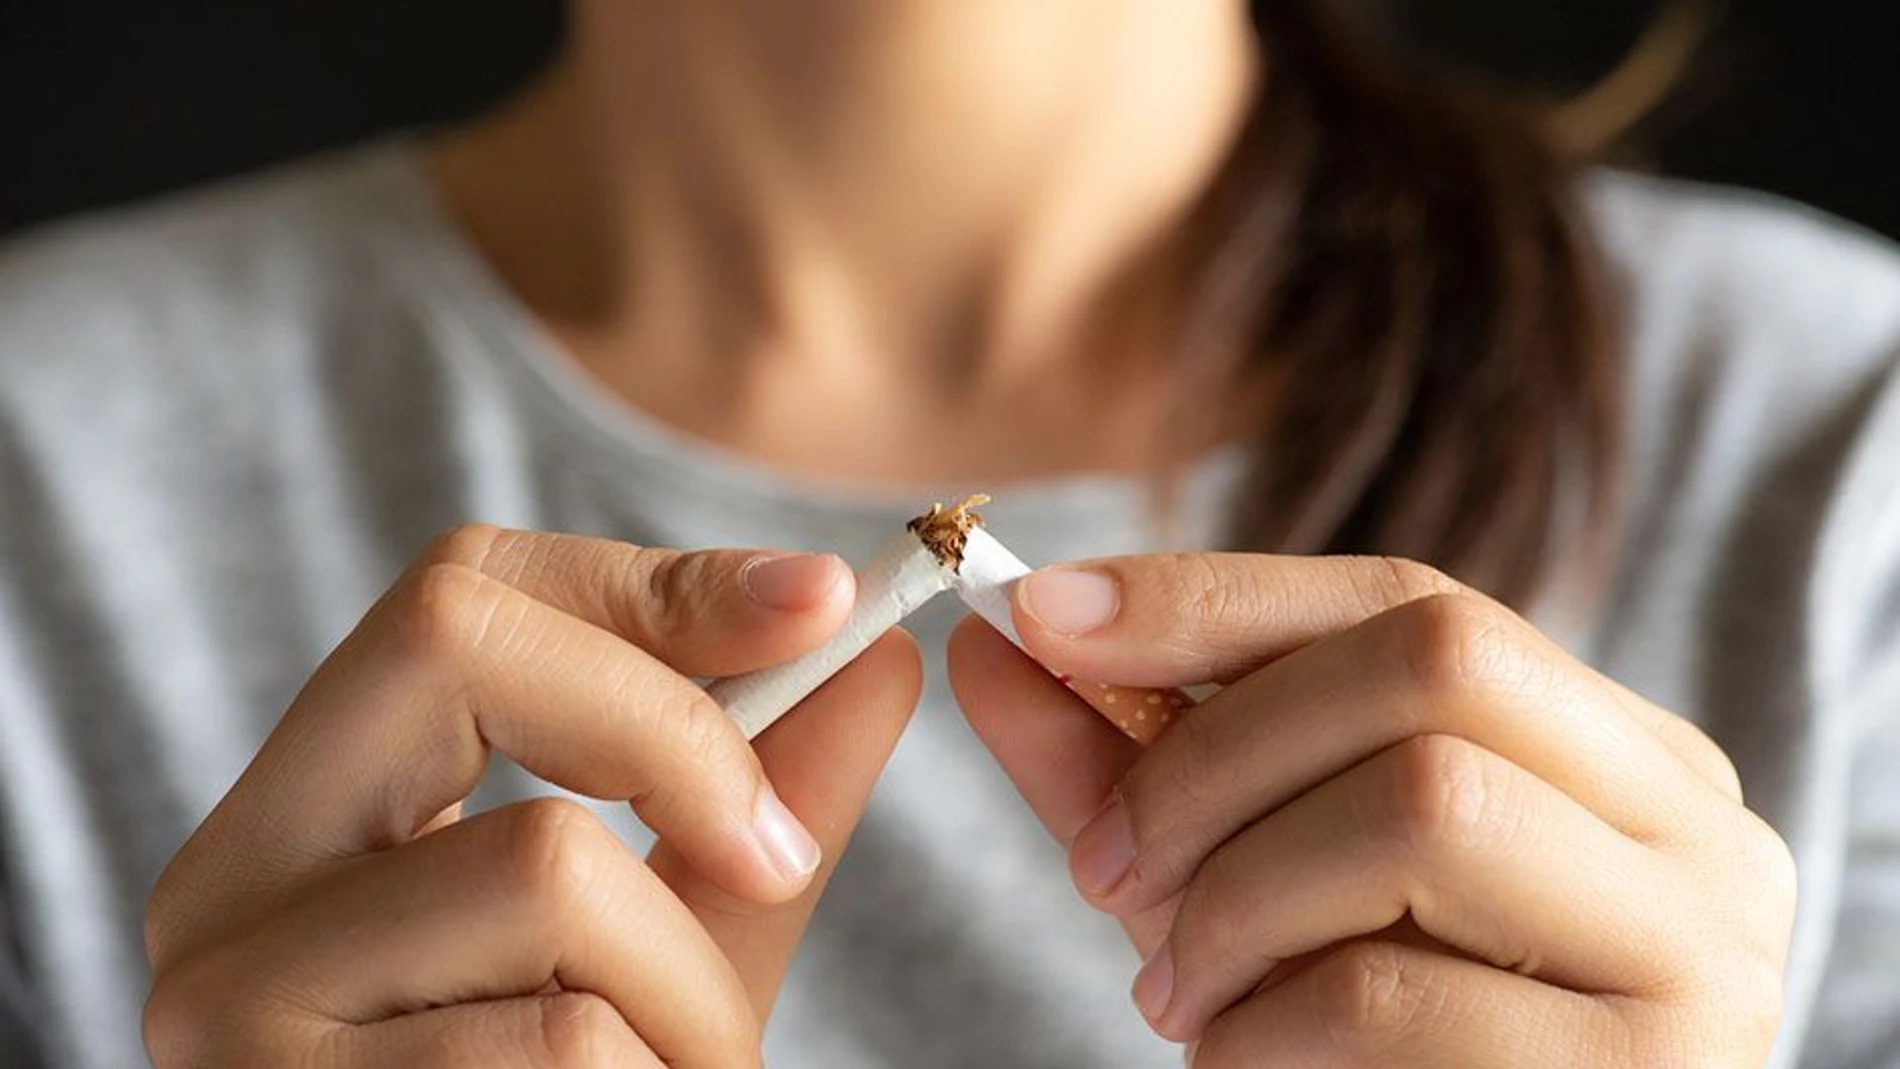 El consumo de tabaco es la principal causa de muerte prematura evitable en España